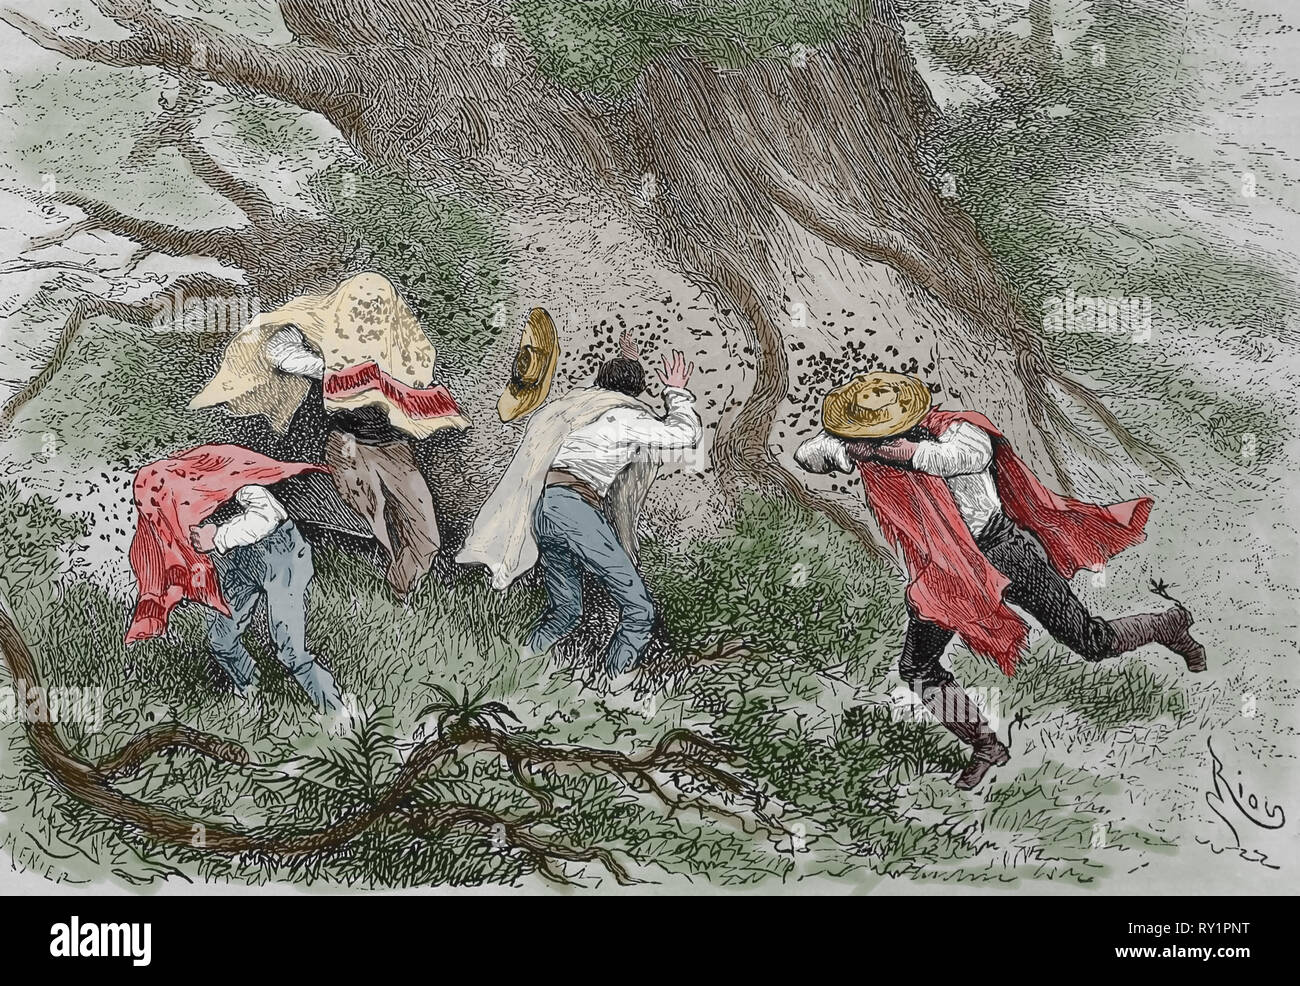 America equonoccial. Erruption di vespe in La Vanguardia. Incisione del XIX secolo. Foto Stock